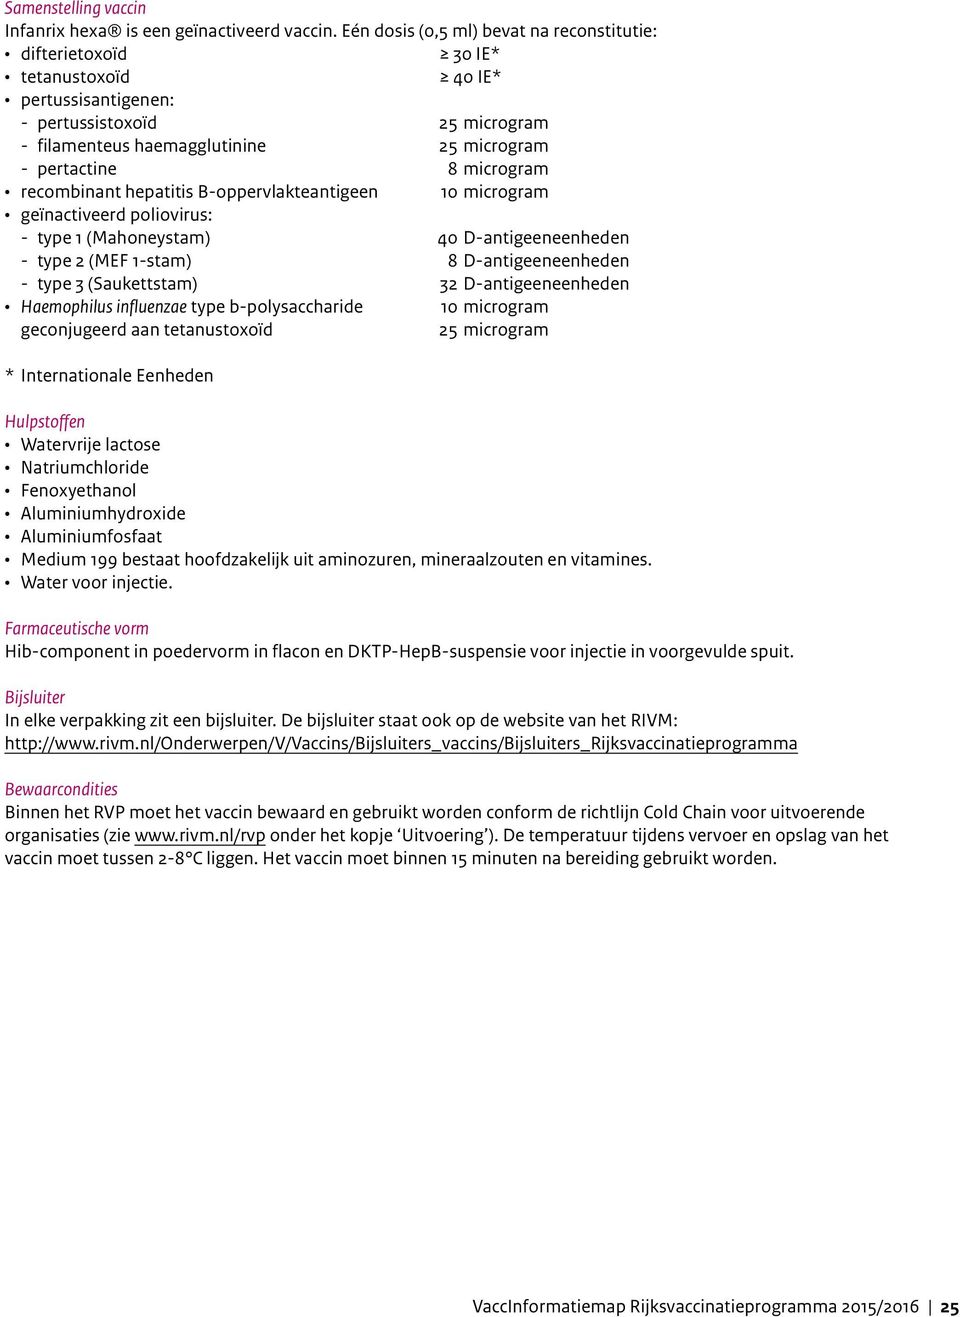 microgram recombinant hepatitis B-oppervlakteantigeen 10 microgram geïnactiveerd poliovirus: - type 1 (Mahoneystam) 40 D-antigeeneenheden - type 2 (MEF 1-stam) 8 D-antigeeneenheden - type 3